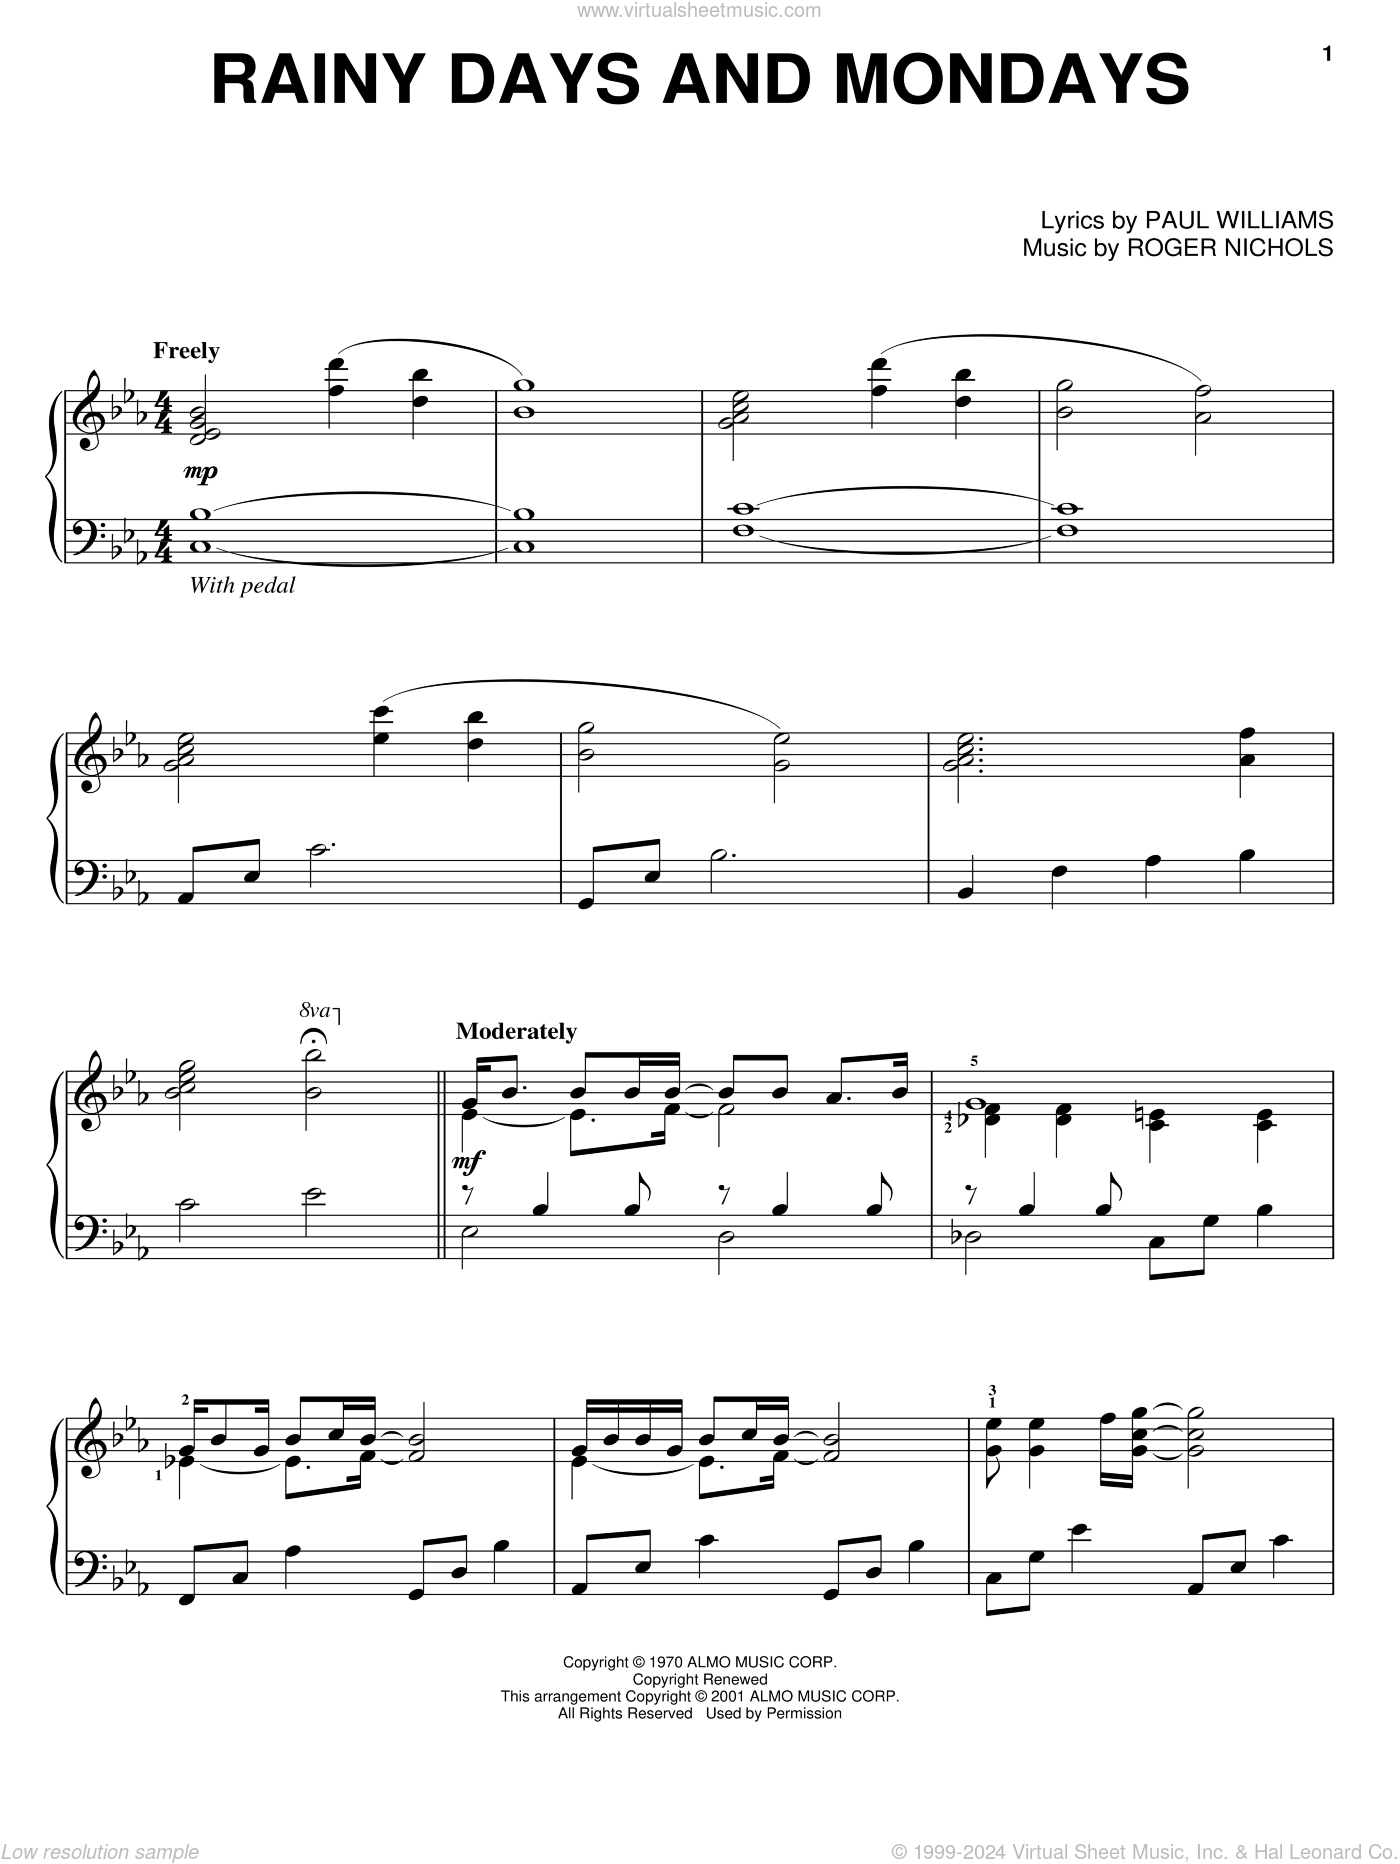 The Rainy Day Sheet music for Piano, Soprano (Piano-Voice)